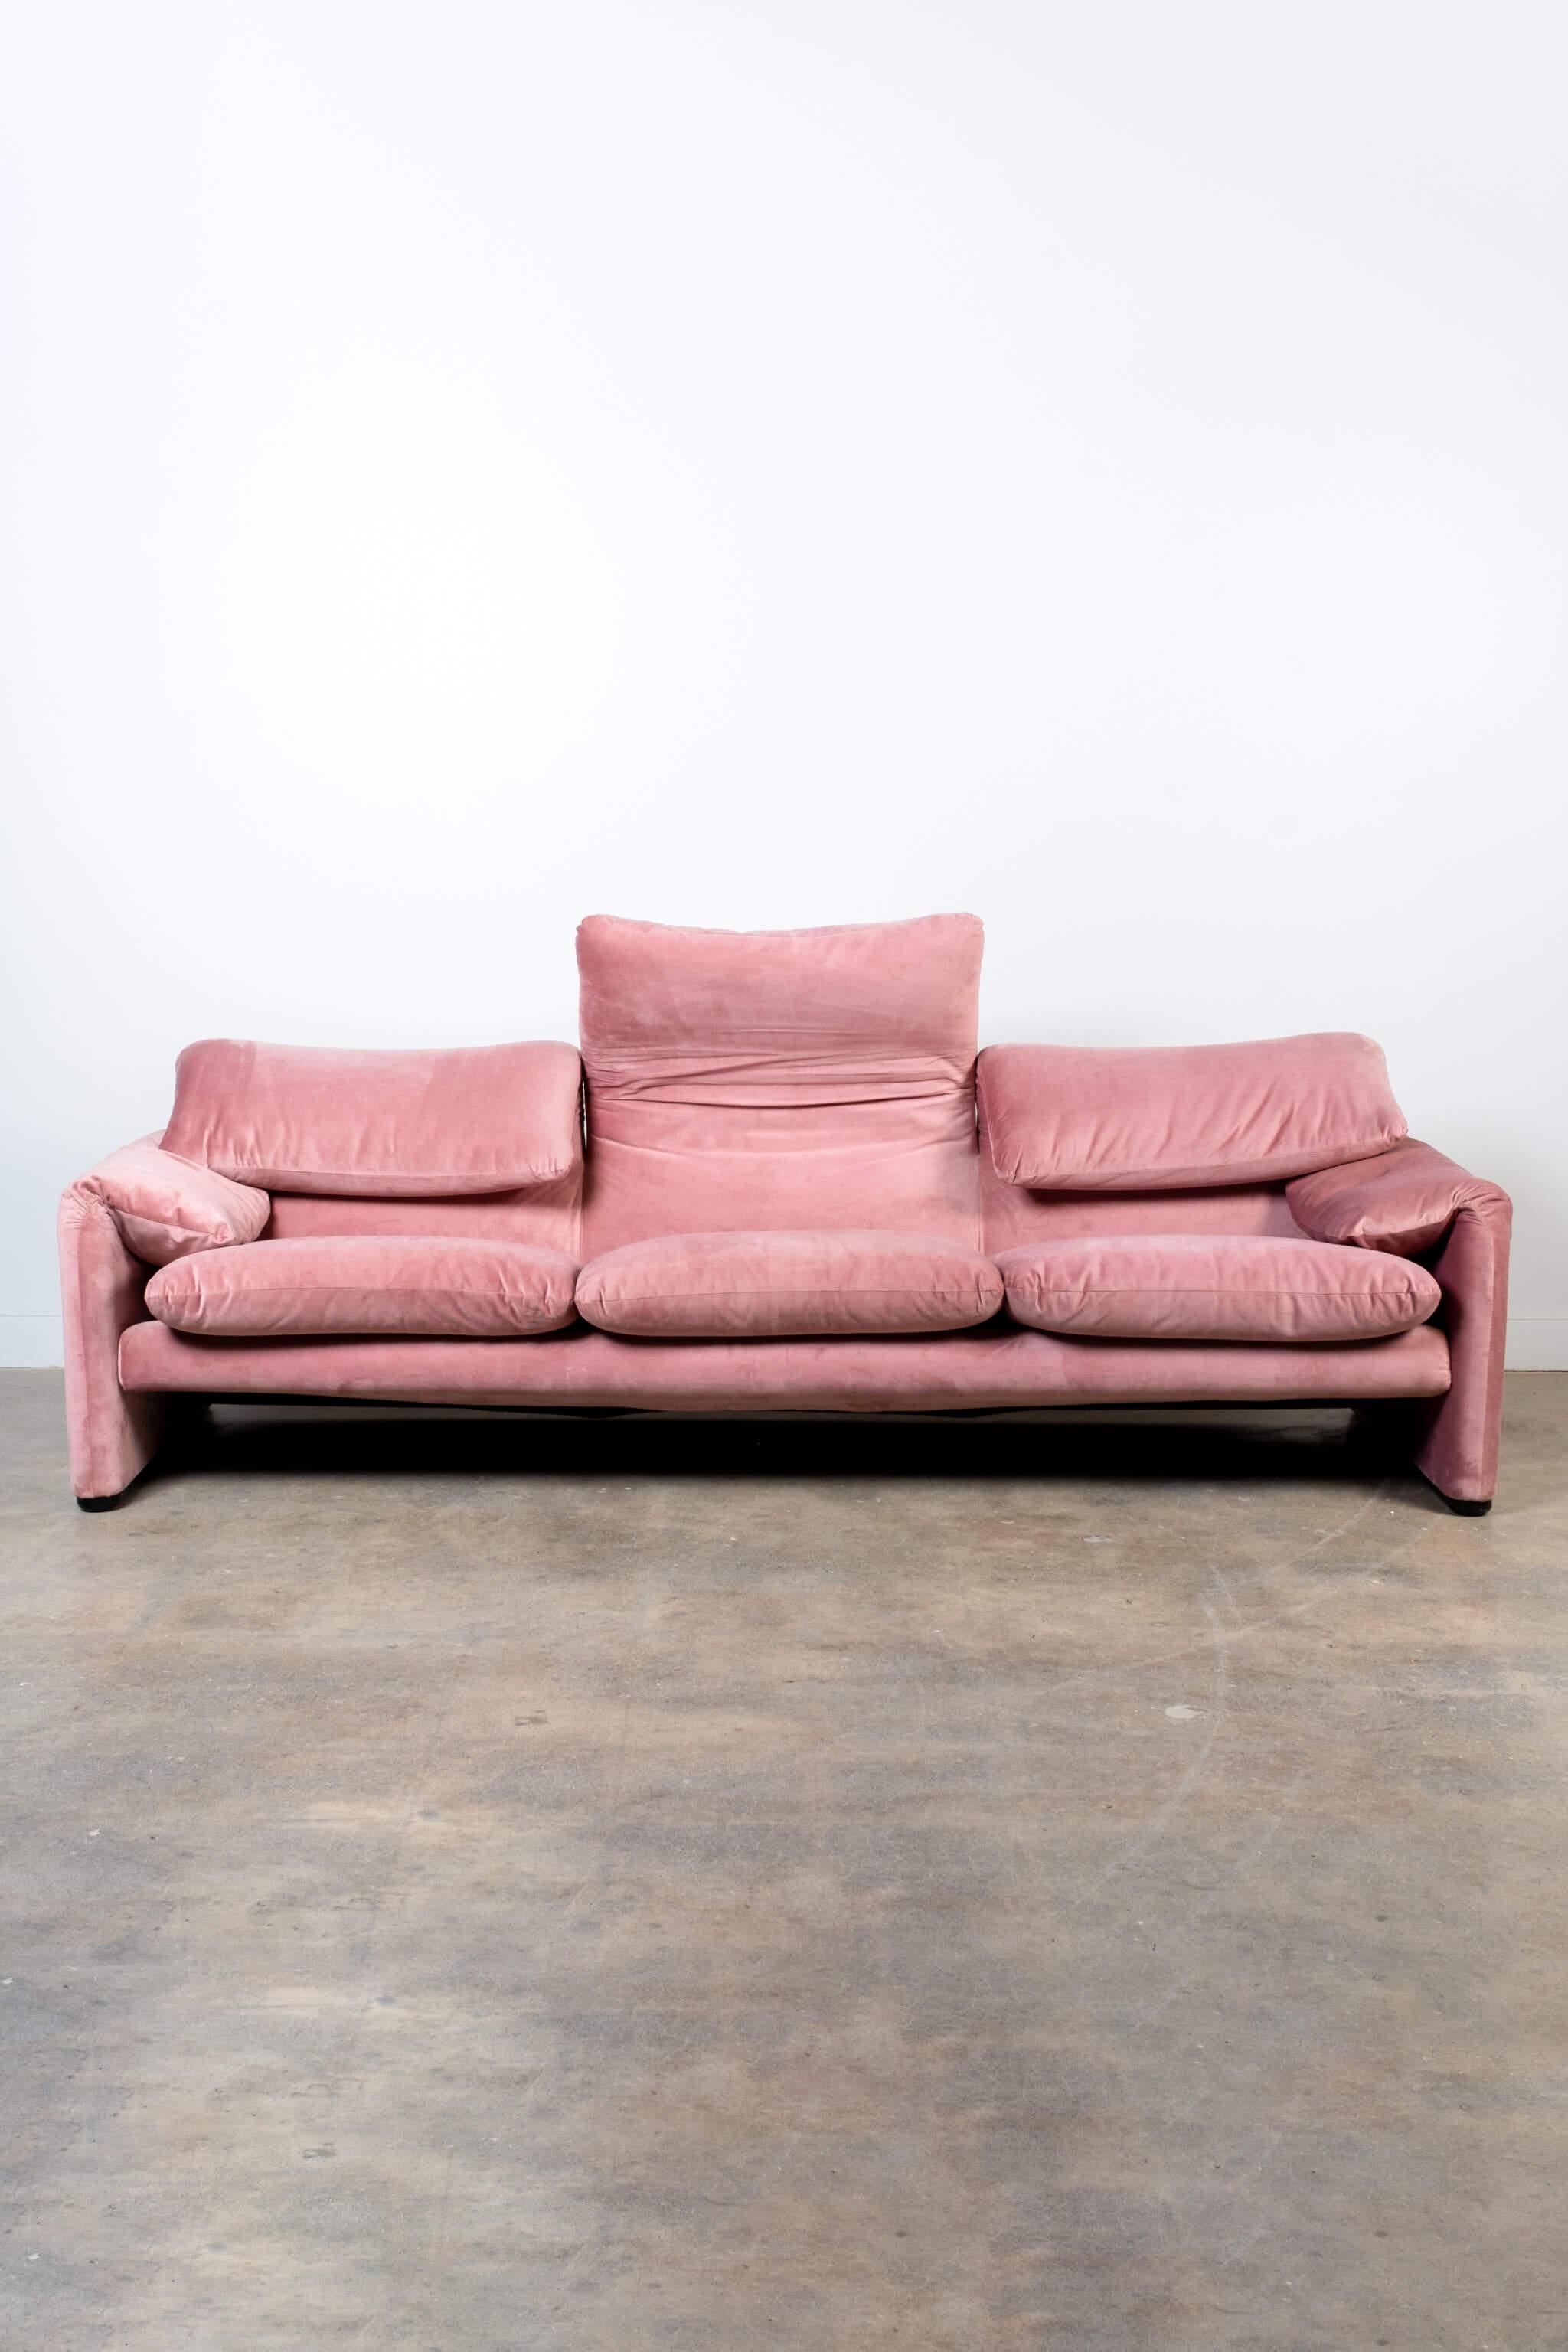 Italian Maralunga 3-Seater Sofa, Newly Reupholstered in Pink Velvet